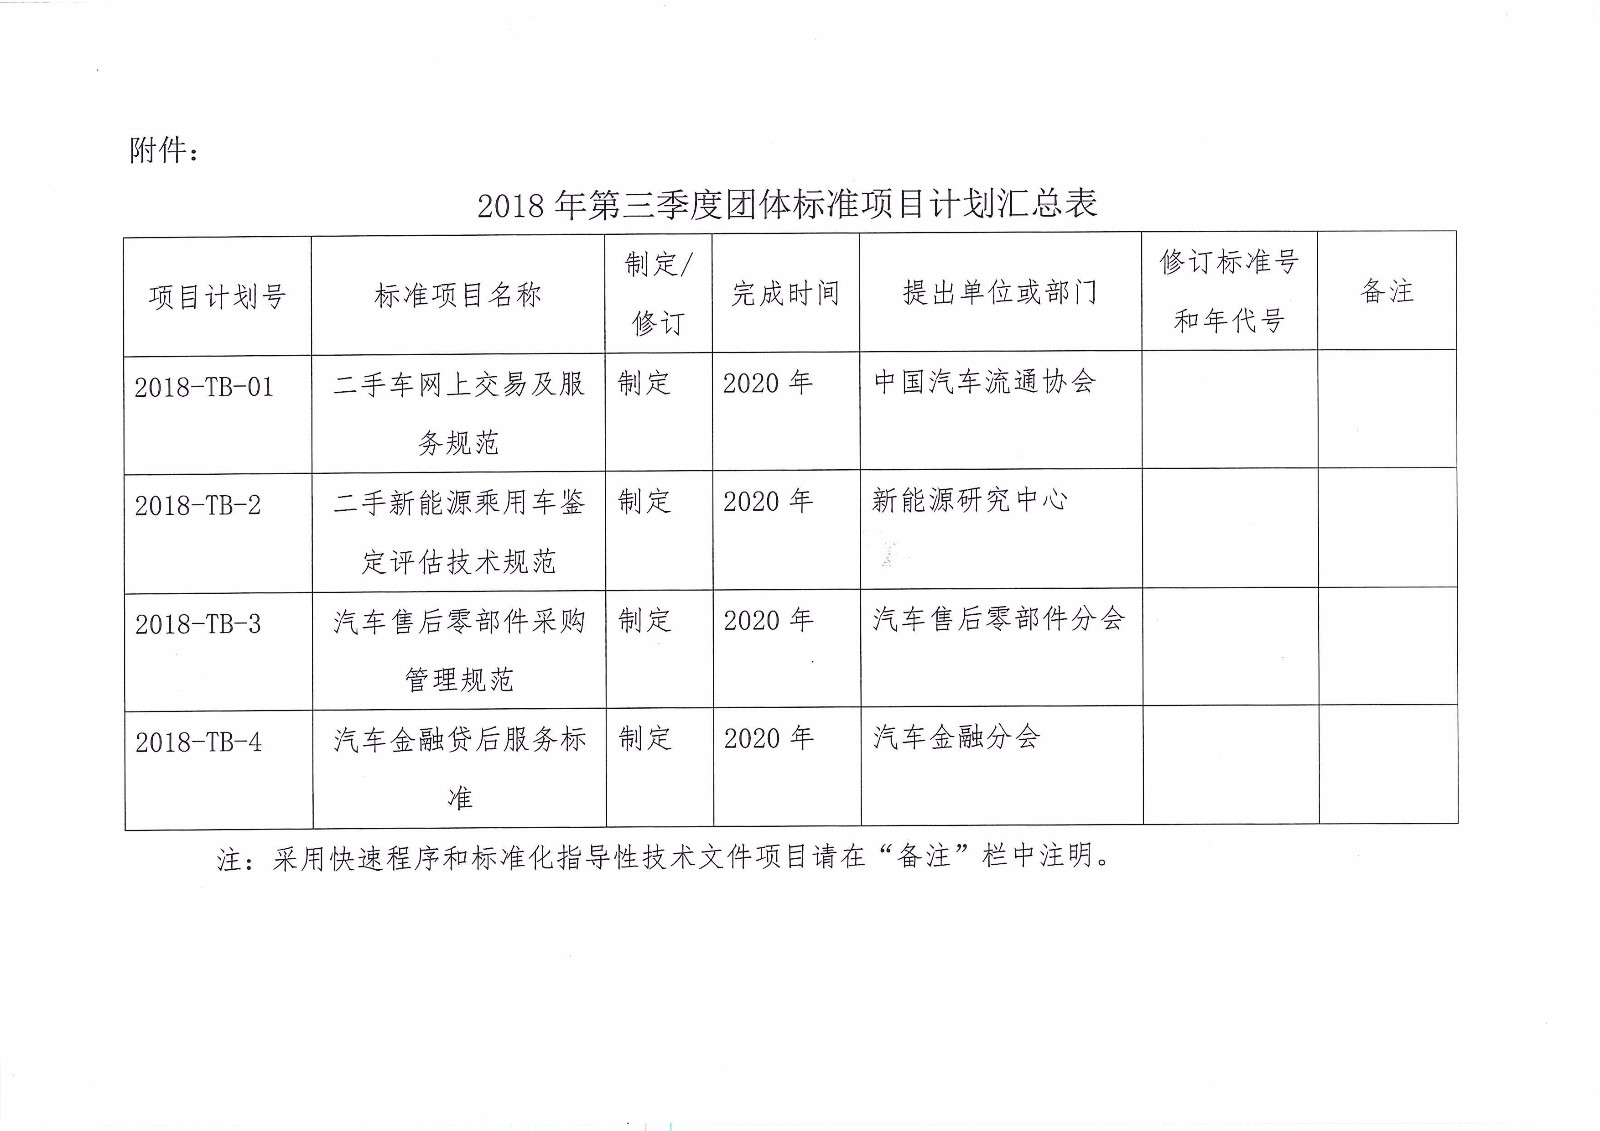 关于印发中国汽车流通协会2018年第三季度团体标准项目计划的通知_页面_2.jpg